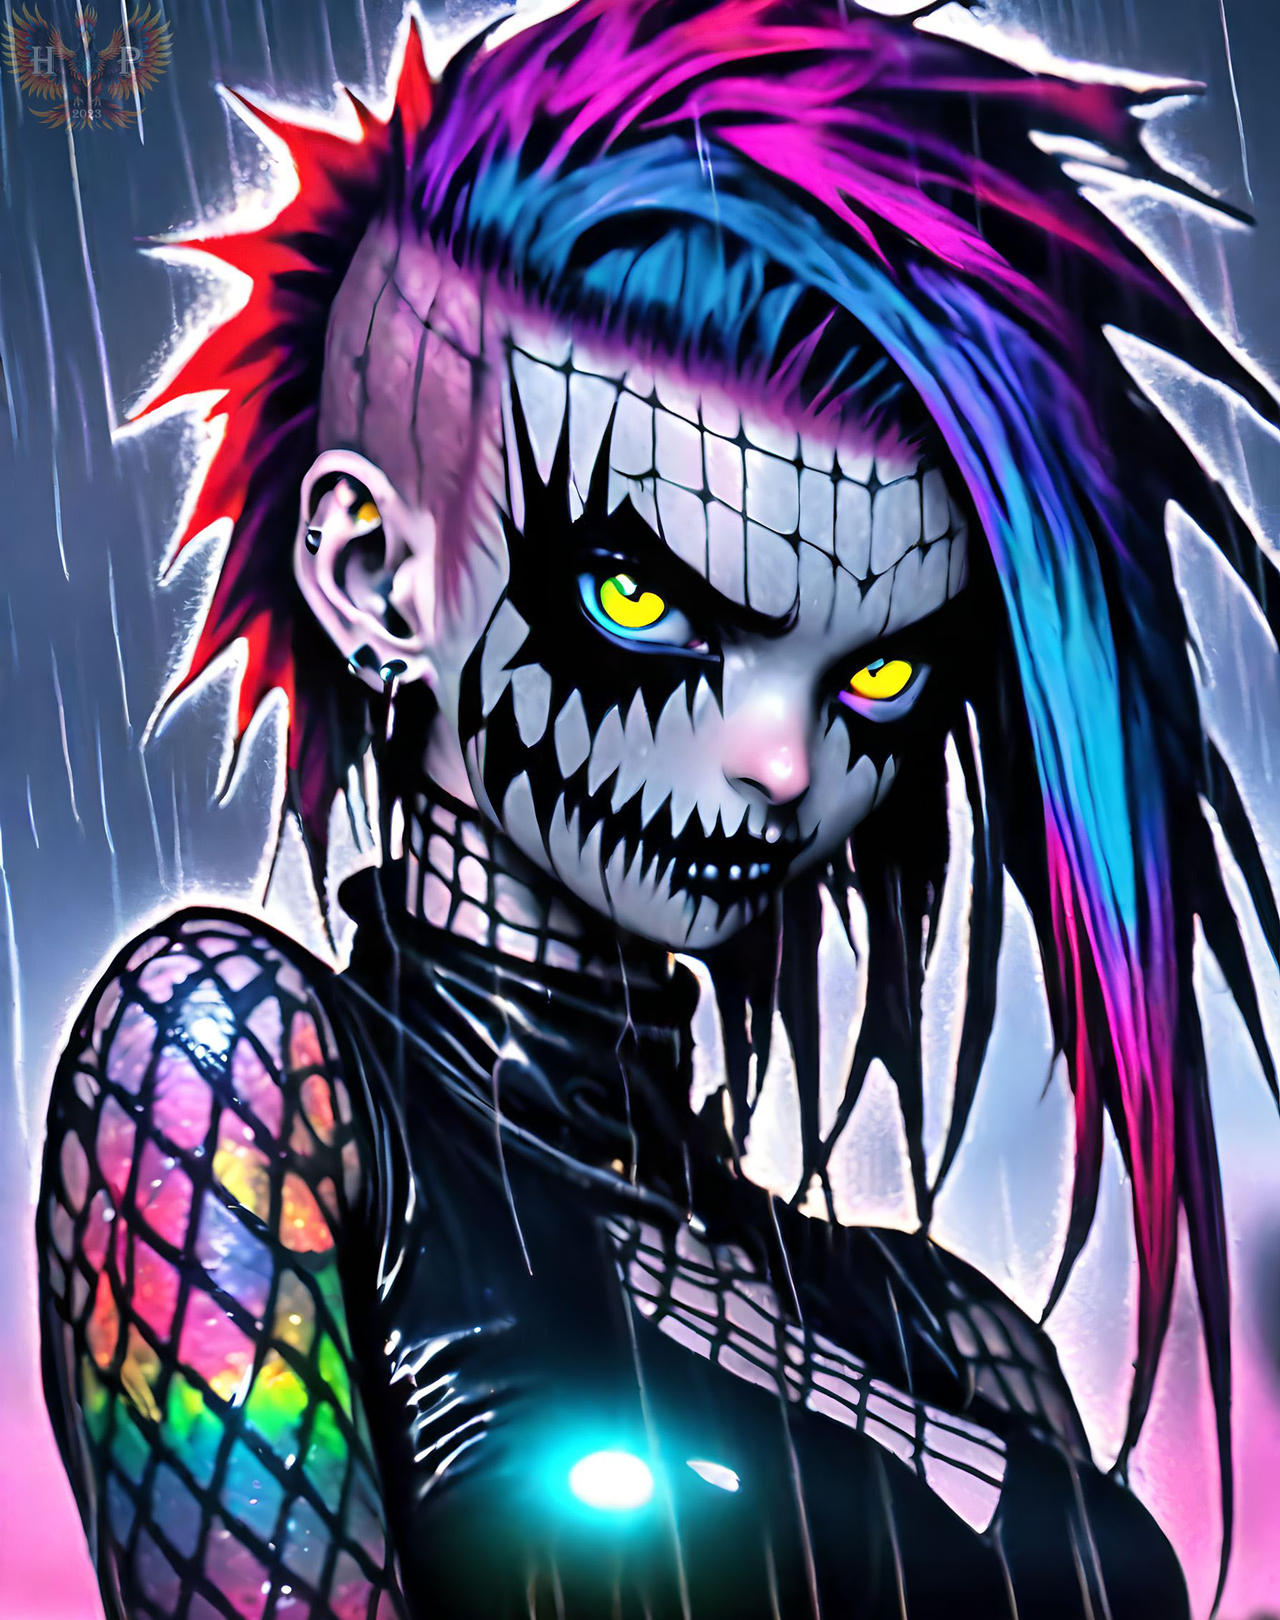 Rainbow Punk by HoolyPhoenix on DeviantArt